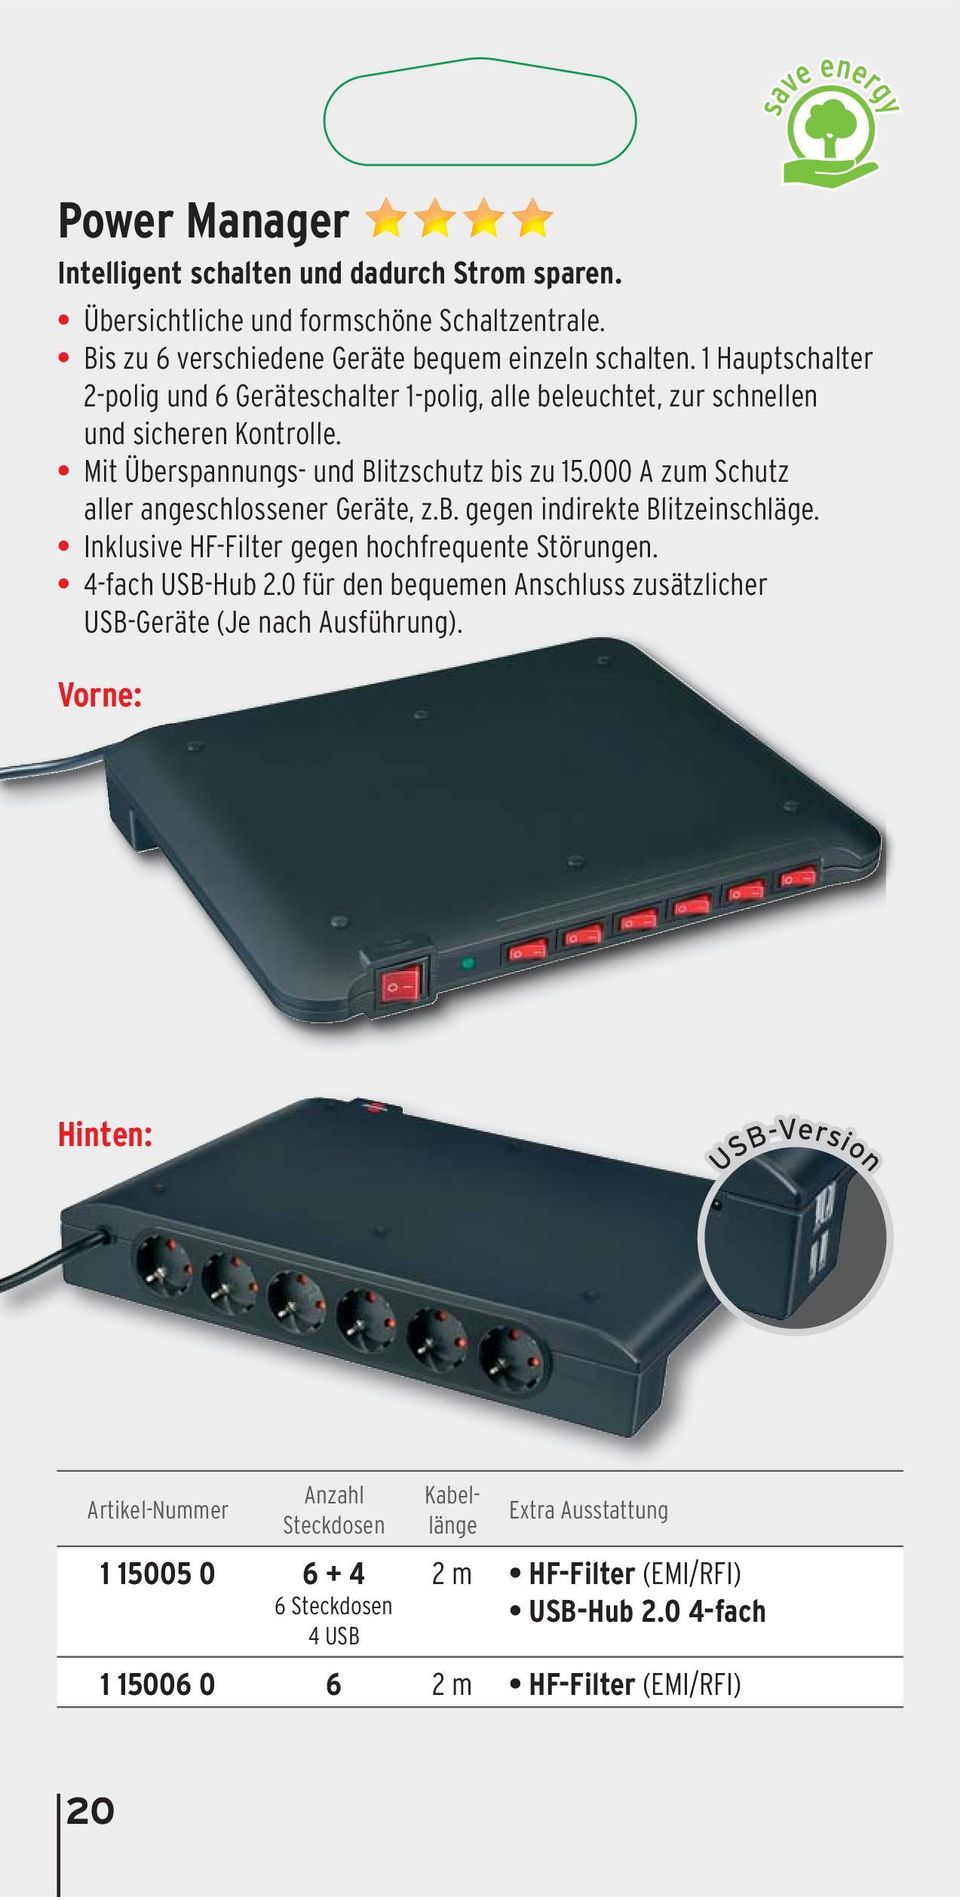 000 A zum Schutz aller angeschlossener Geräte, z.b. gegen indirekte Blitzeinschläge. Inklusive HF-Filter gegen hochfrequente Störungen. 4-fach USB-Hub 2.